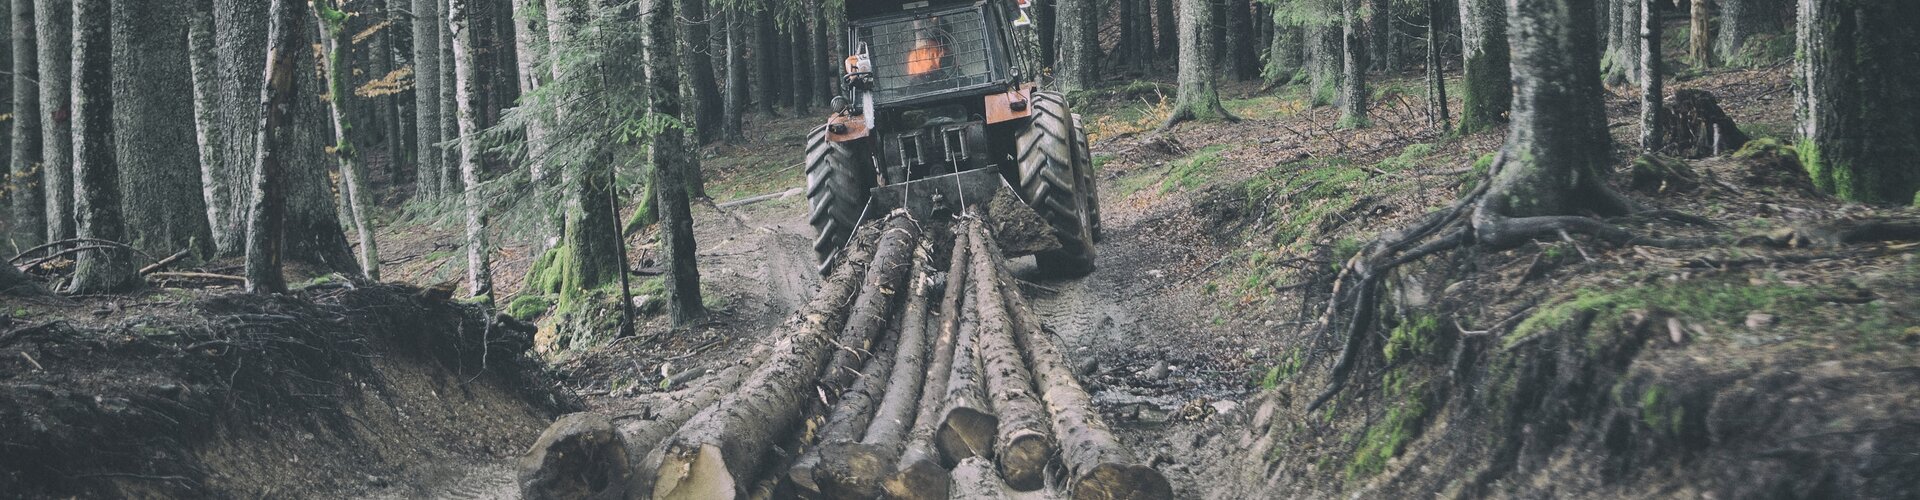 Tipps zur Sicherheit bei der Forstarbeit: So vermeiden Forstwirte